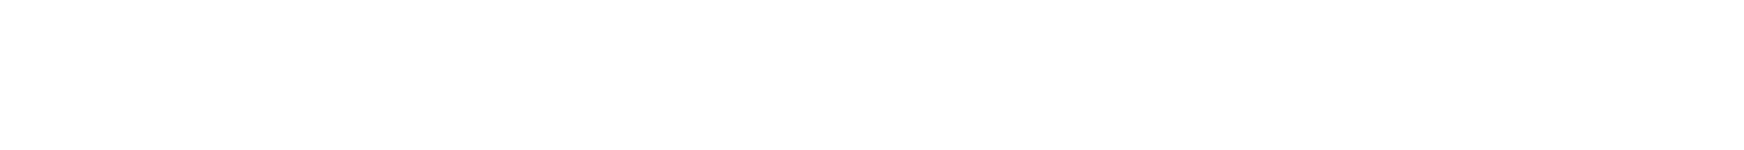 Opus 2 White lp email logo banner all white-